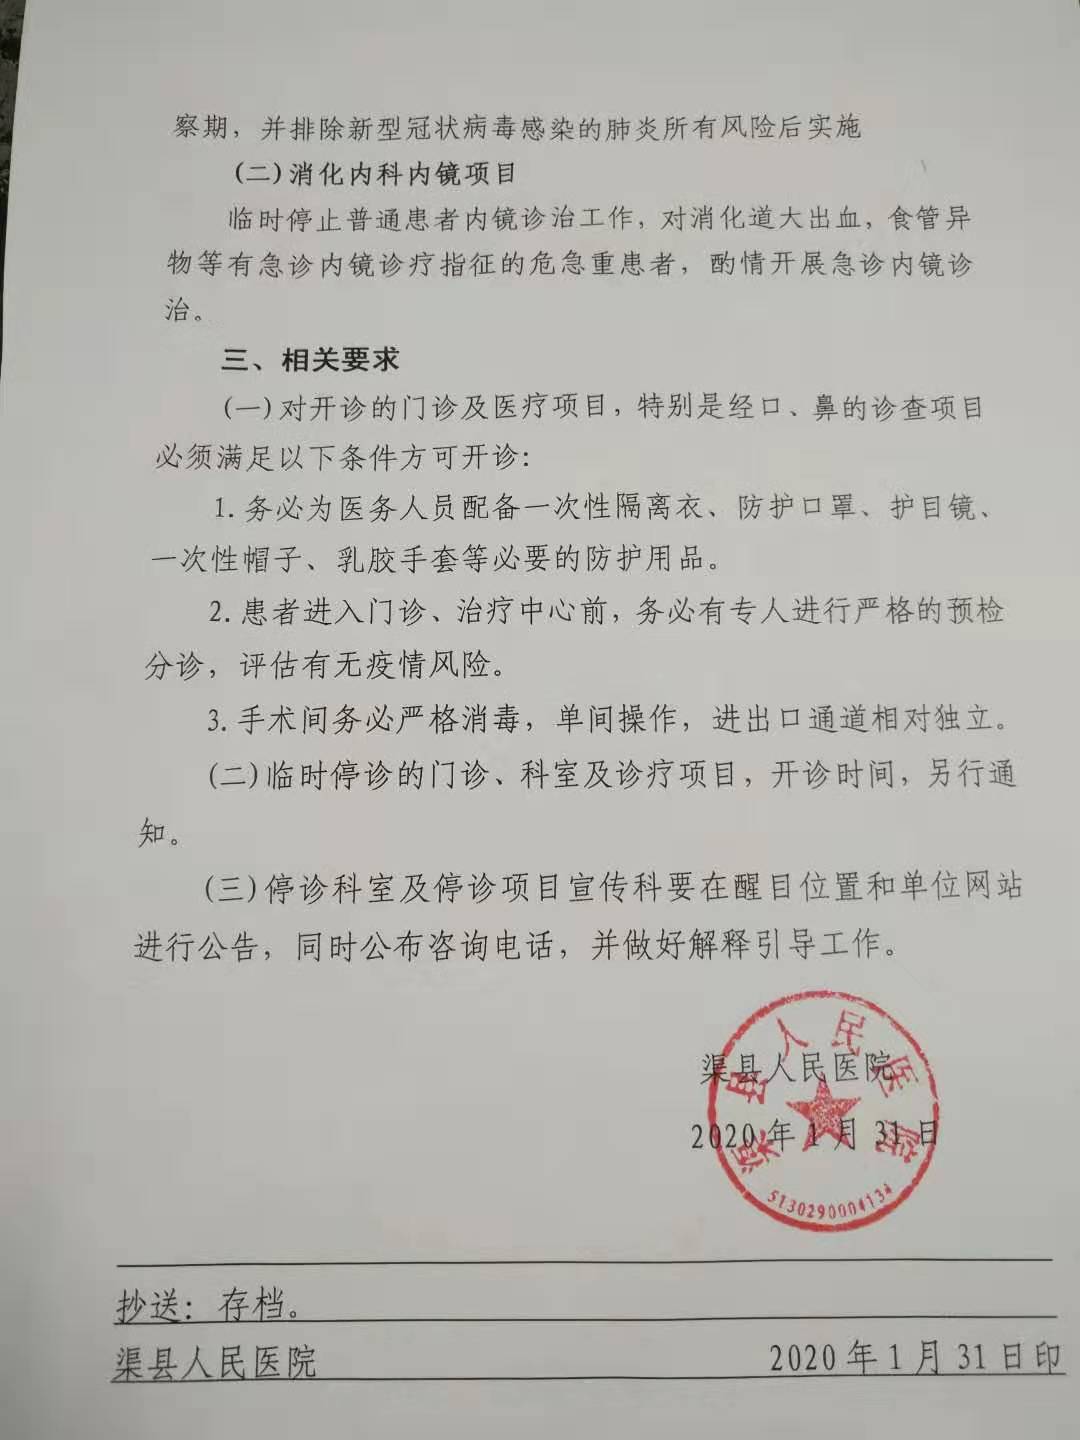 渠县人民医院关于临时停止部分诊疗工作的通知